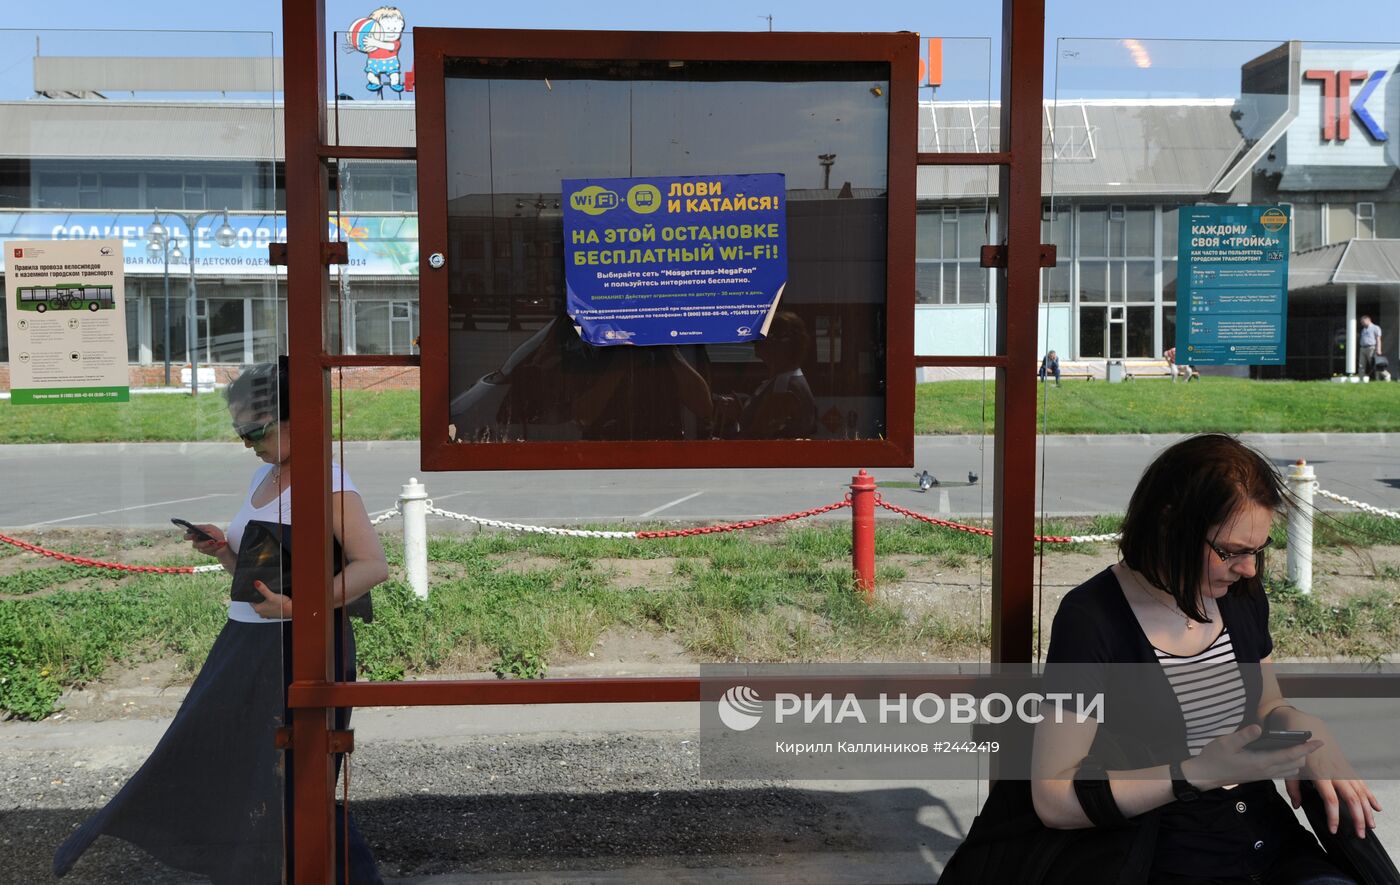 Остановки общественного транспорта с бесплатным Wi-Fi в Москве